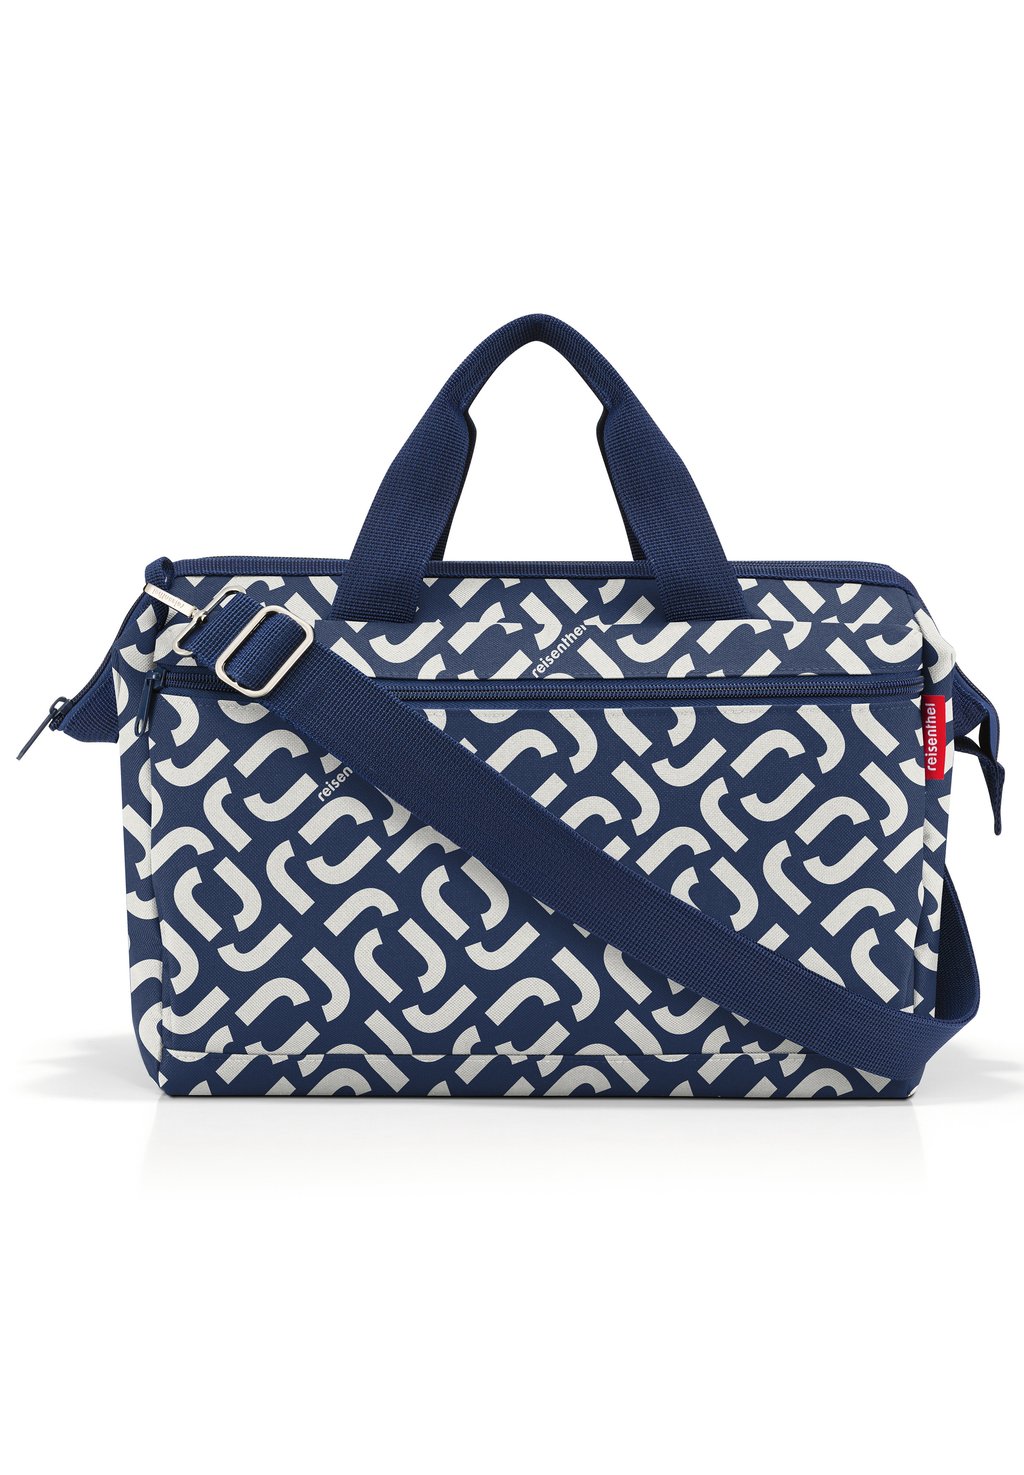 Сумка Weekender ALLROUNDER S Reisenthel, цвет signature navy сумки для мамы reisenthel сумка allrounder m zebra